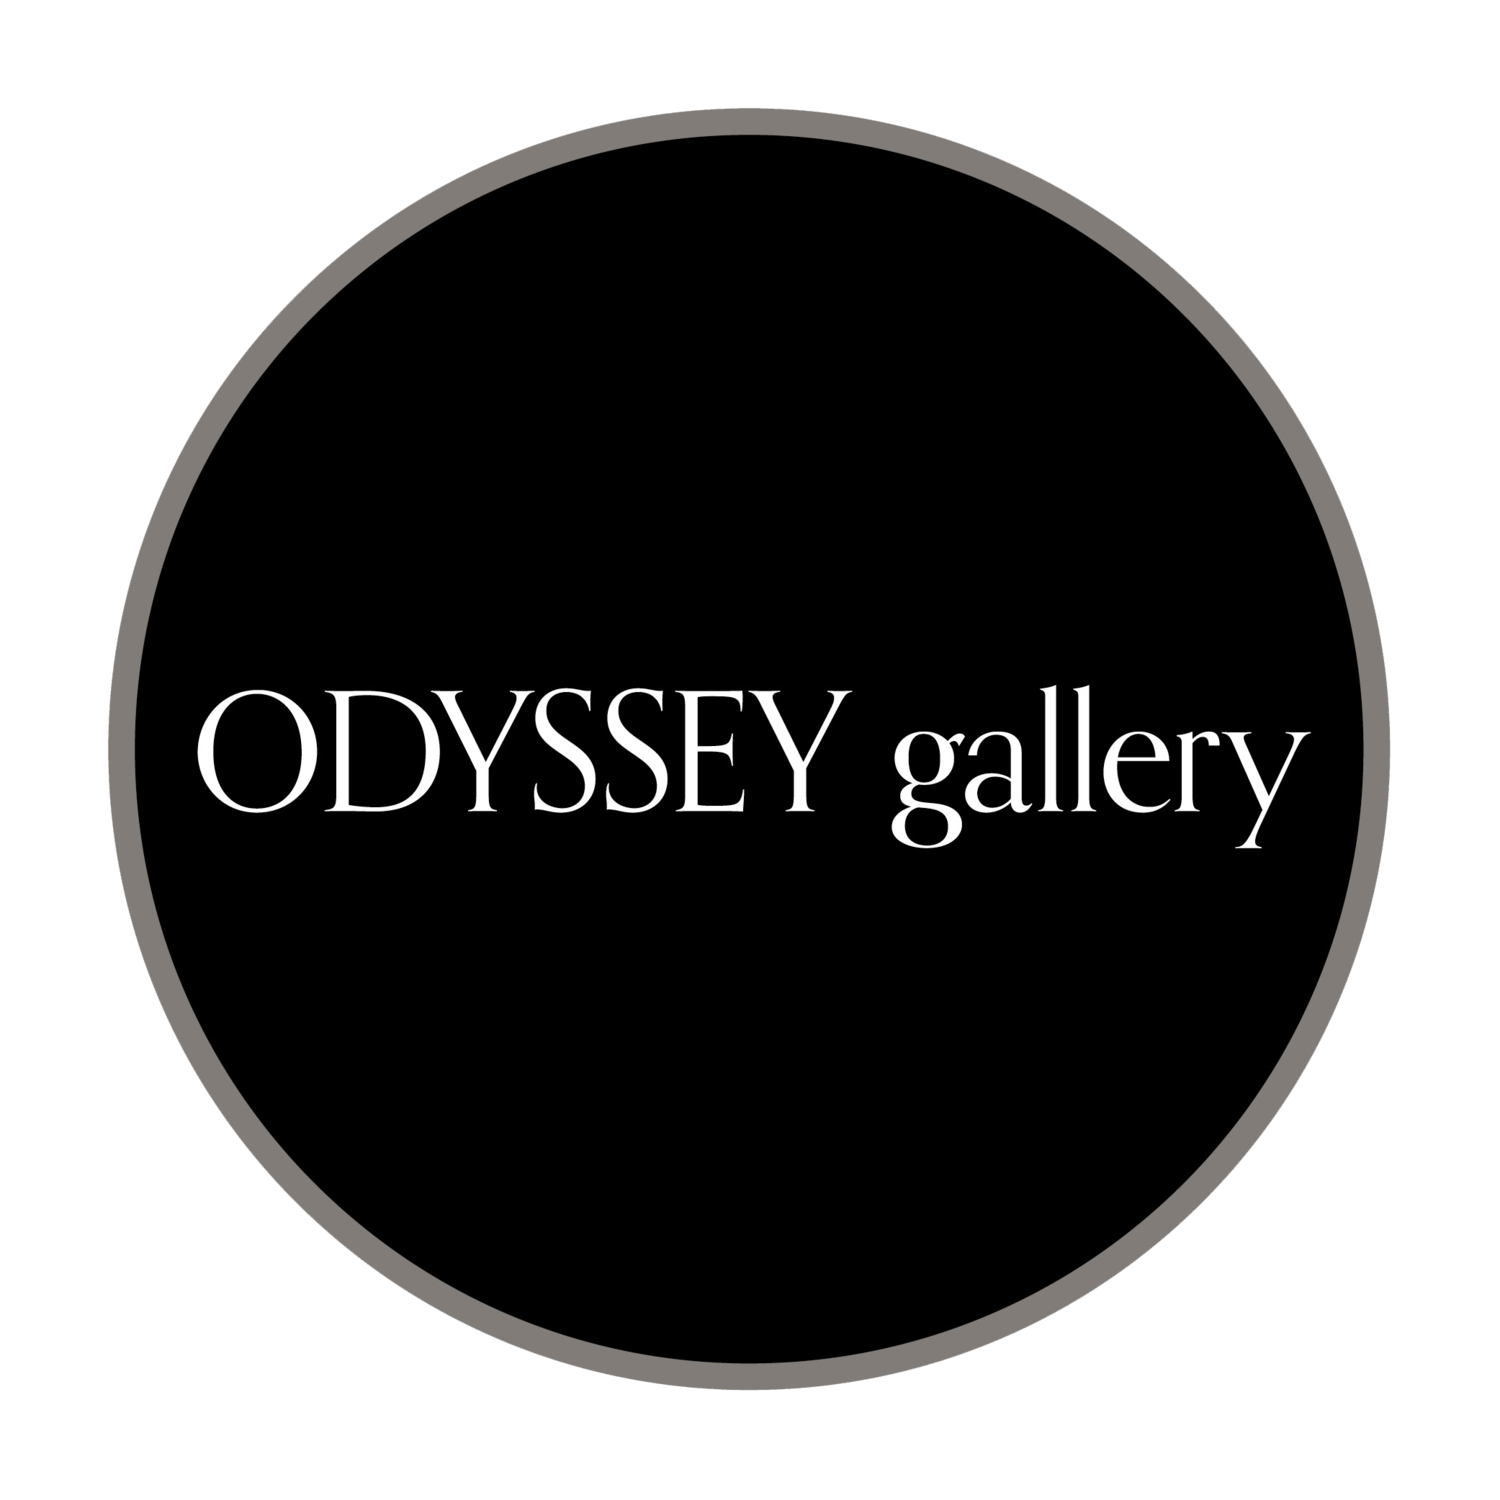 ODYSSEY gallery